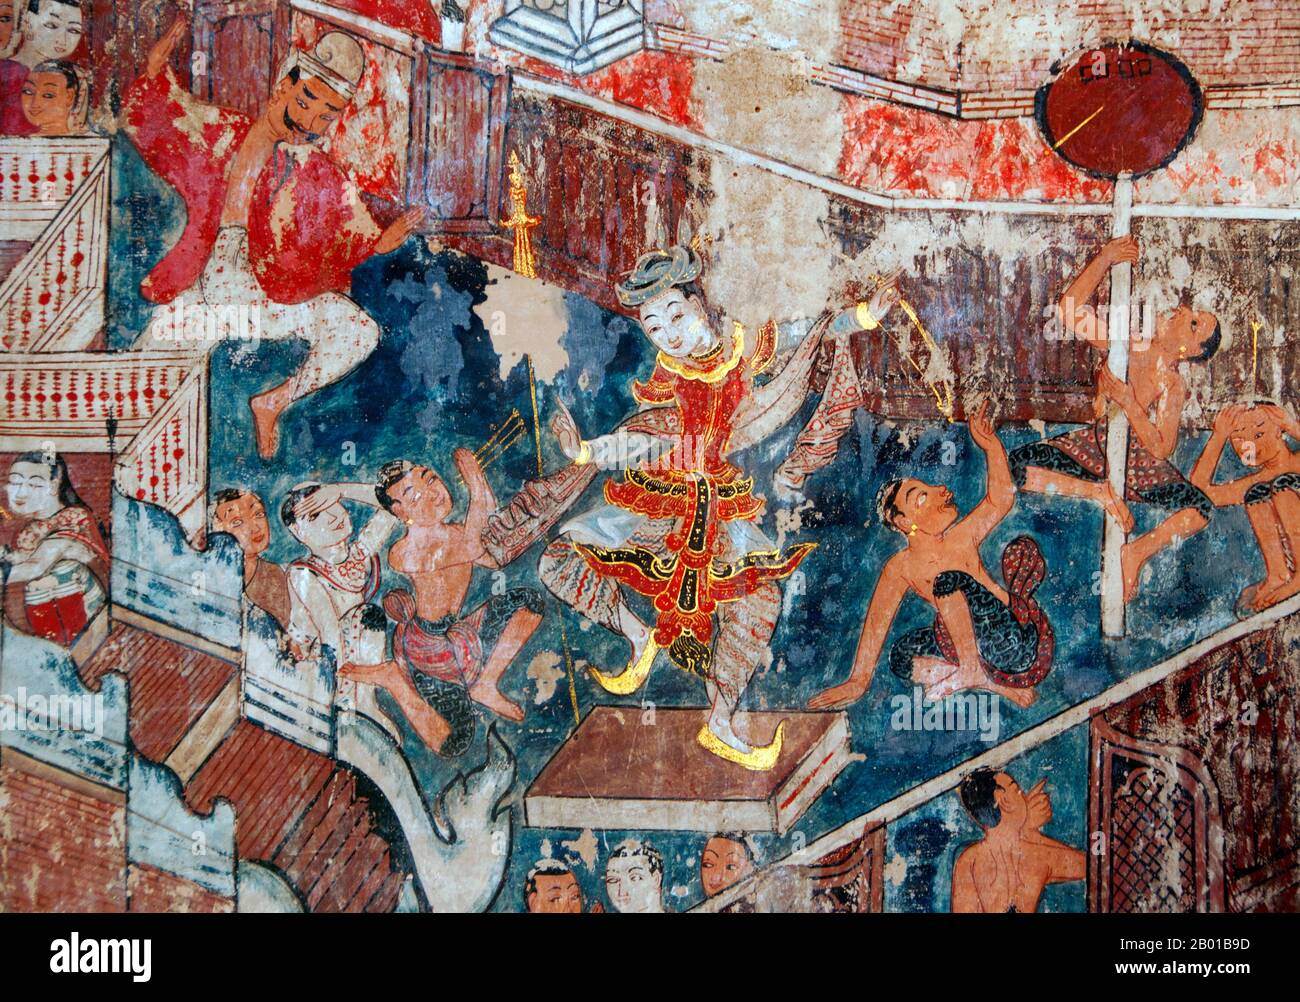 Thaïlande: Danseuse, peintures murales du sud, Wat Buak Khrok Luang, Chiang Mai. Wat Buak Khrok Luang, situé à Ban Buak Khrok Luang Moo 1, Chiang Mai – Sankamphaeng Road, Chiang Mai, est un petit temple bouddhiste typiquement thaïlandais du nord. Il aurait été fondé au 15th siècle à l'époque du Royaume indépendant de Lanna (1292-1558), et a été largement restauré pendant le règne de Chao Kaew Naowarat (r.1911-1939), le dernier roi de Chiang Mai. Le temple est surtout remarquable pour son principal viharn, qui est purement Lanna en inspiration. Banque D'Images